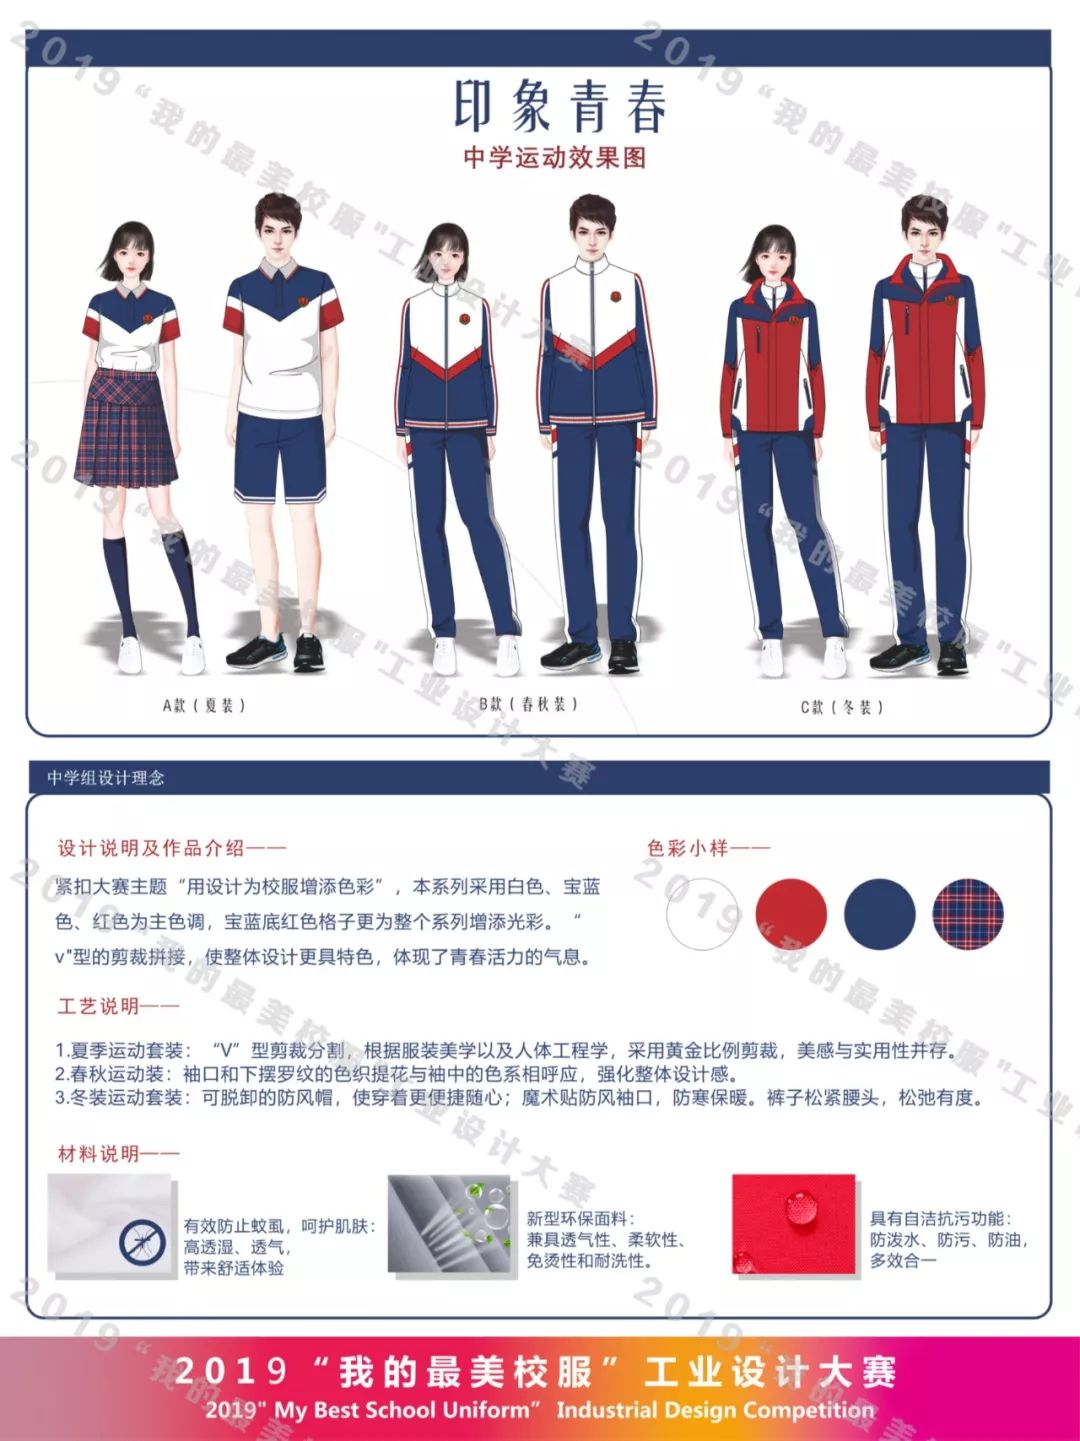 中学(中职)组运动服 《唐风青葱岁月中学生校服系列》